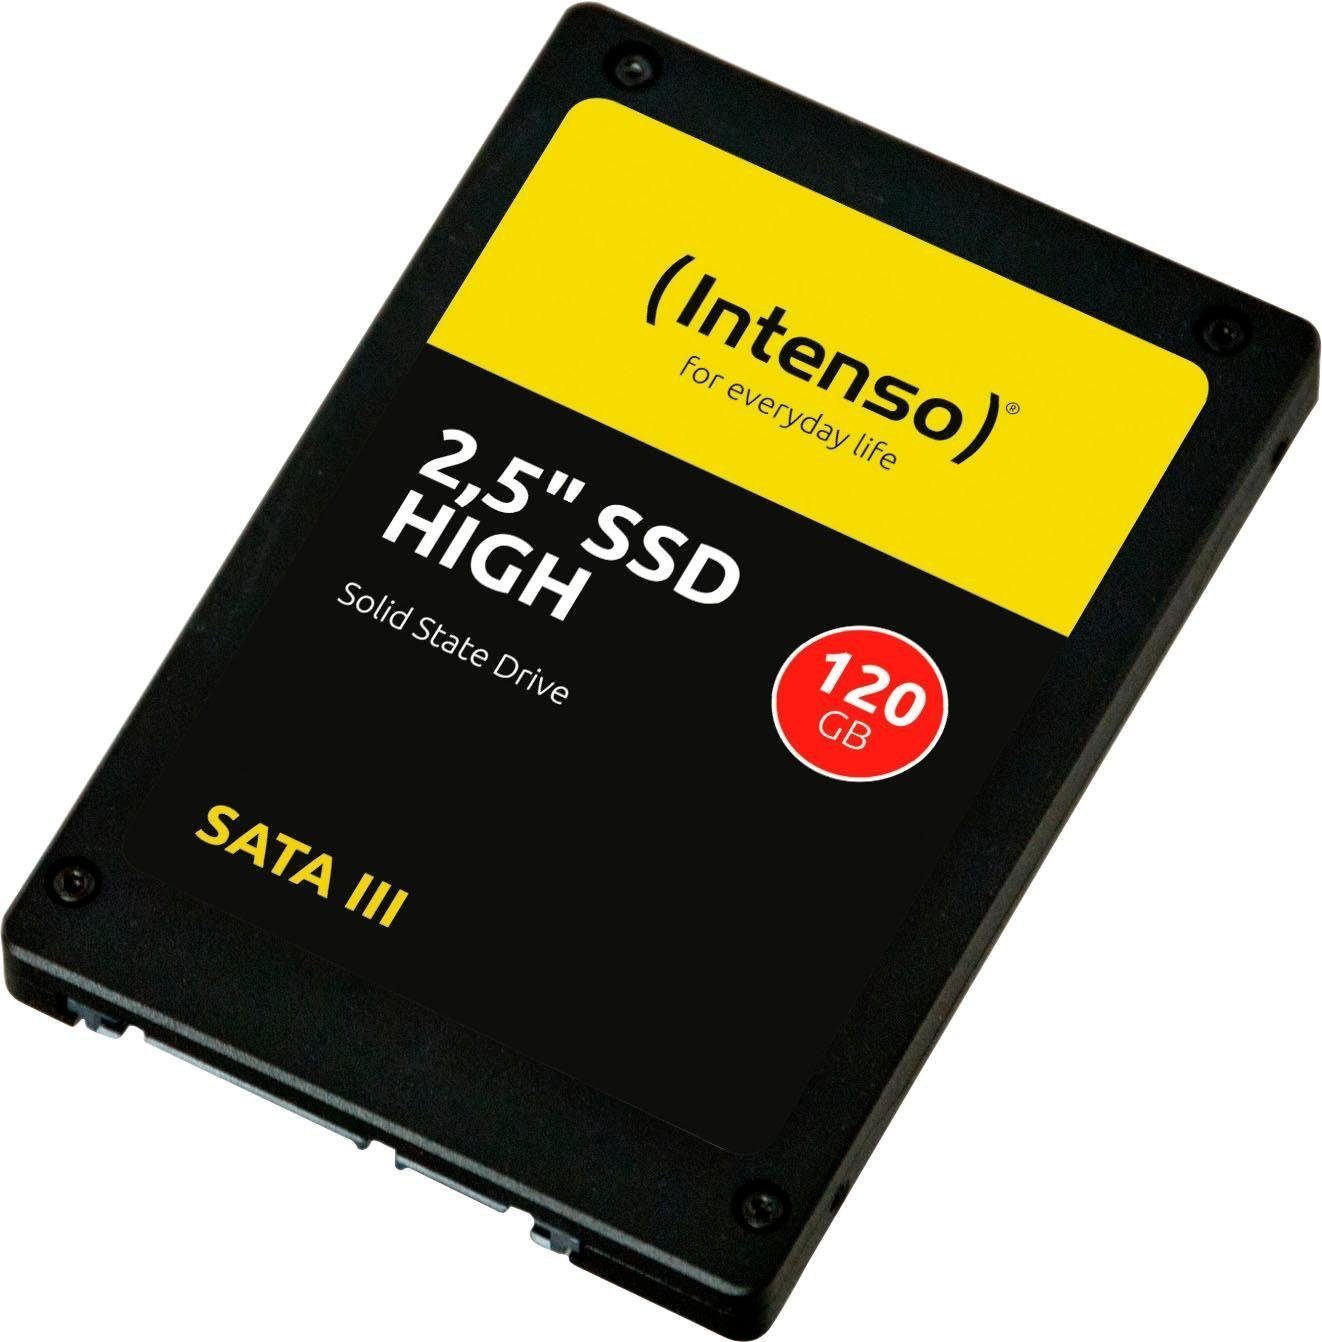 MB/S MB/S Intenso GB) interne Lesegeschwindigkeit, 480 (120 HIGH SSD 520 Schreibgeschwindigkeit 2,5"